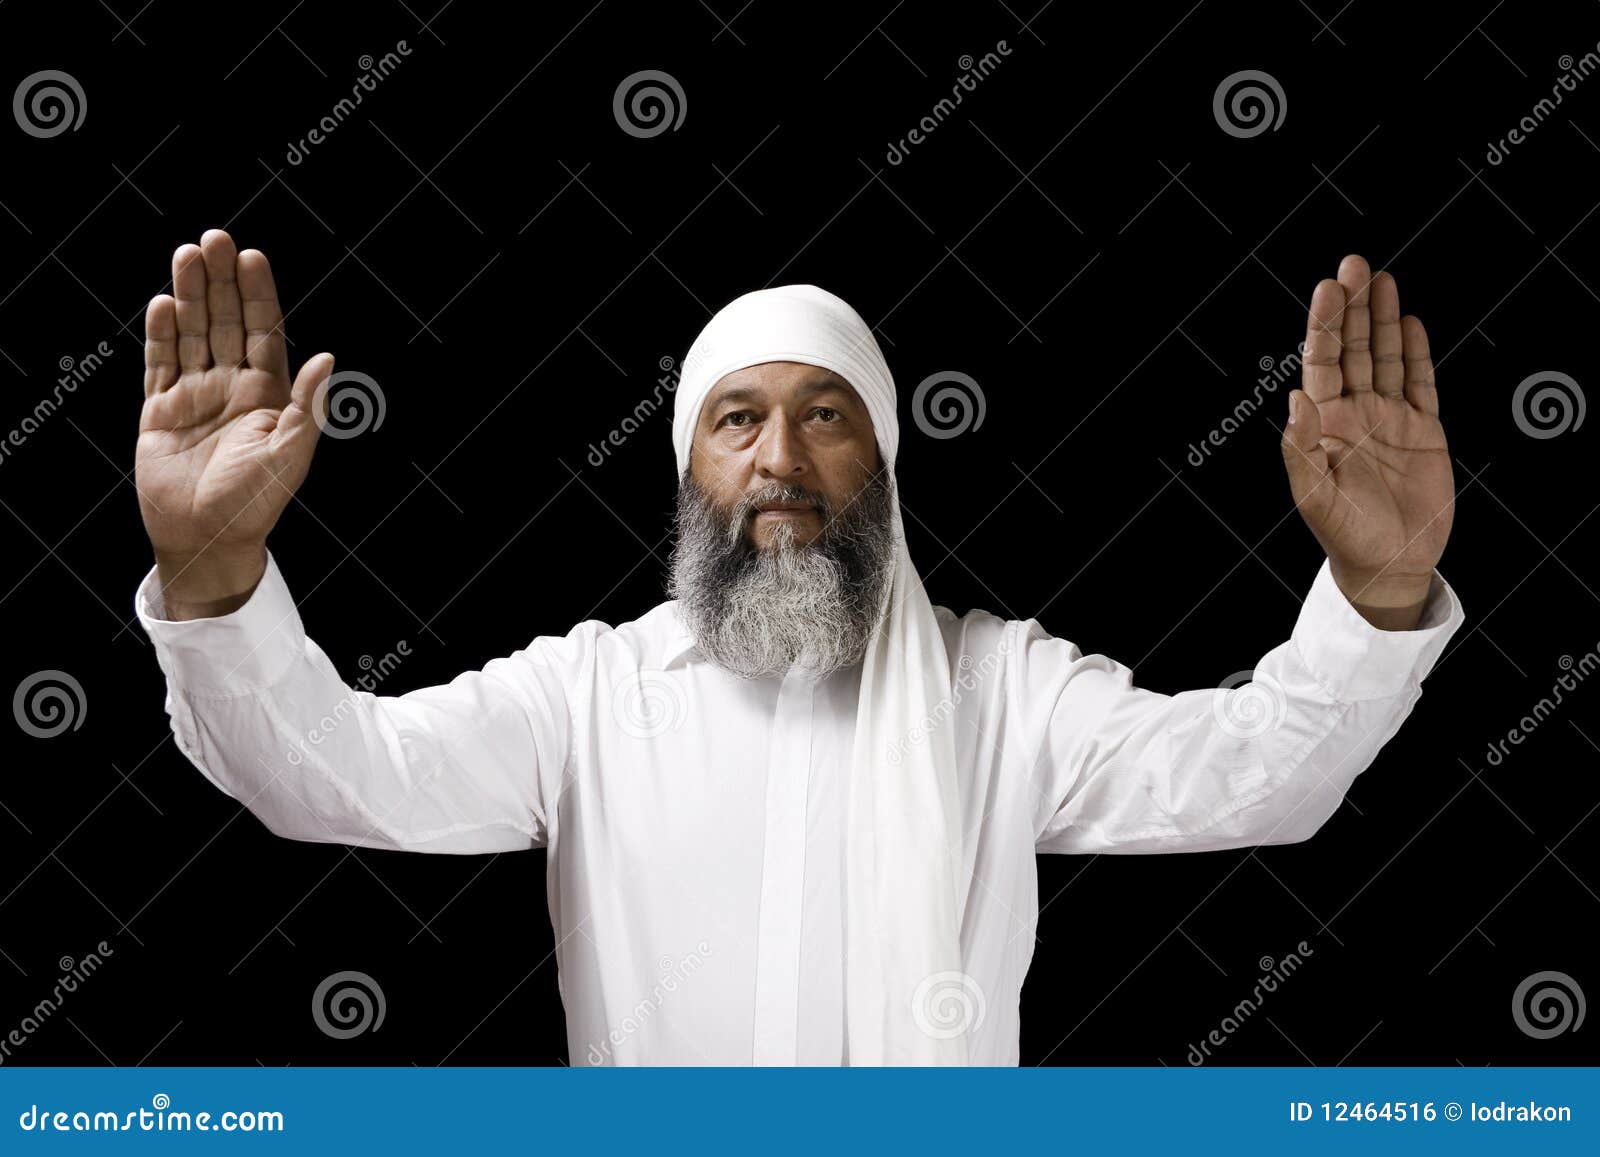 Hombre musulmán con turbante, hombre árabe Foto de stock 511337815